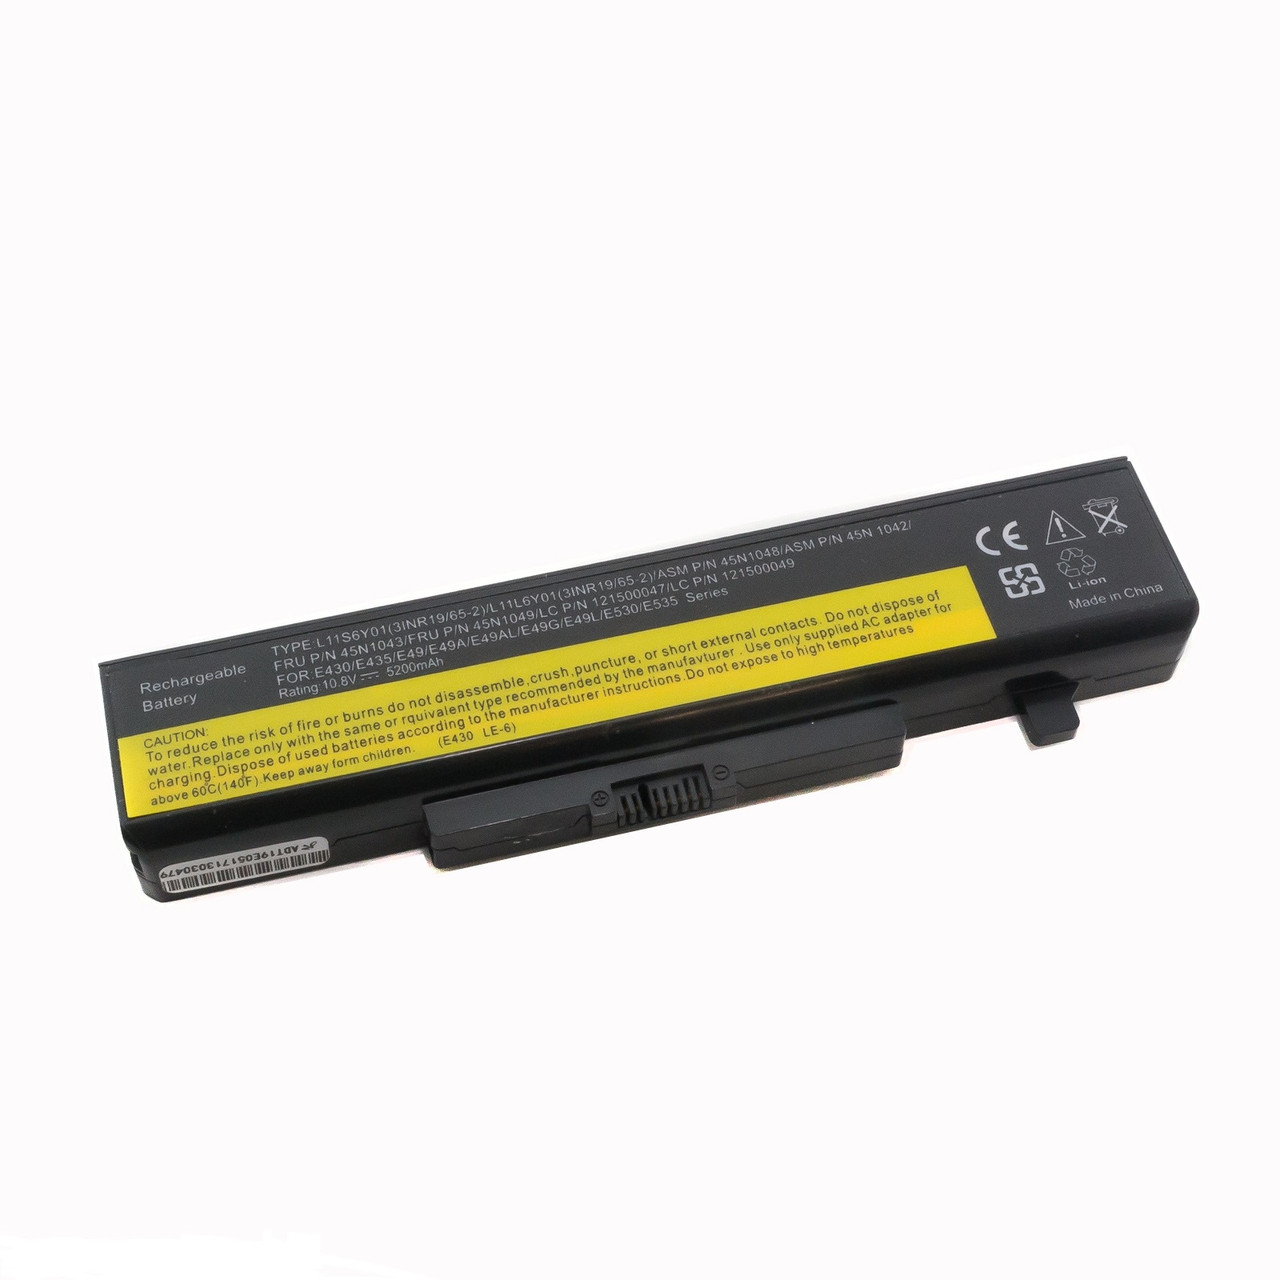 Оригинальный аккумулятор (батарея) для ноутбука Lenovo B490 (L11S6Y01) 10.8V 48Wh